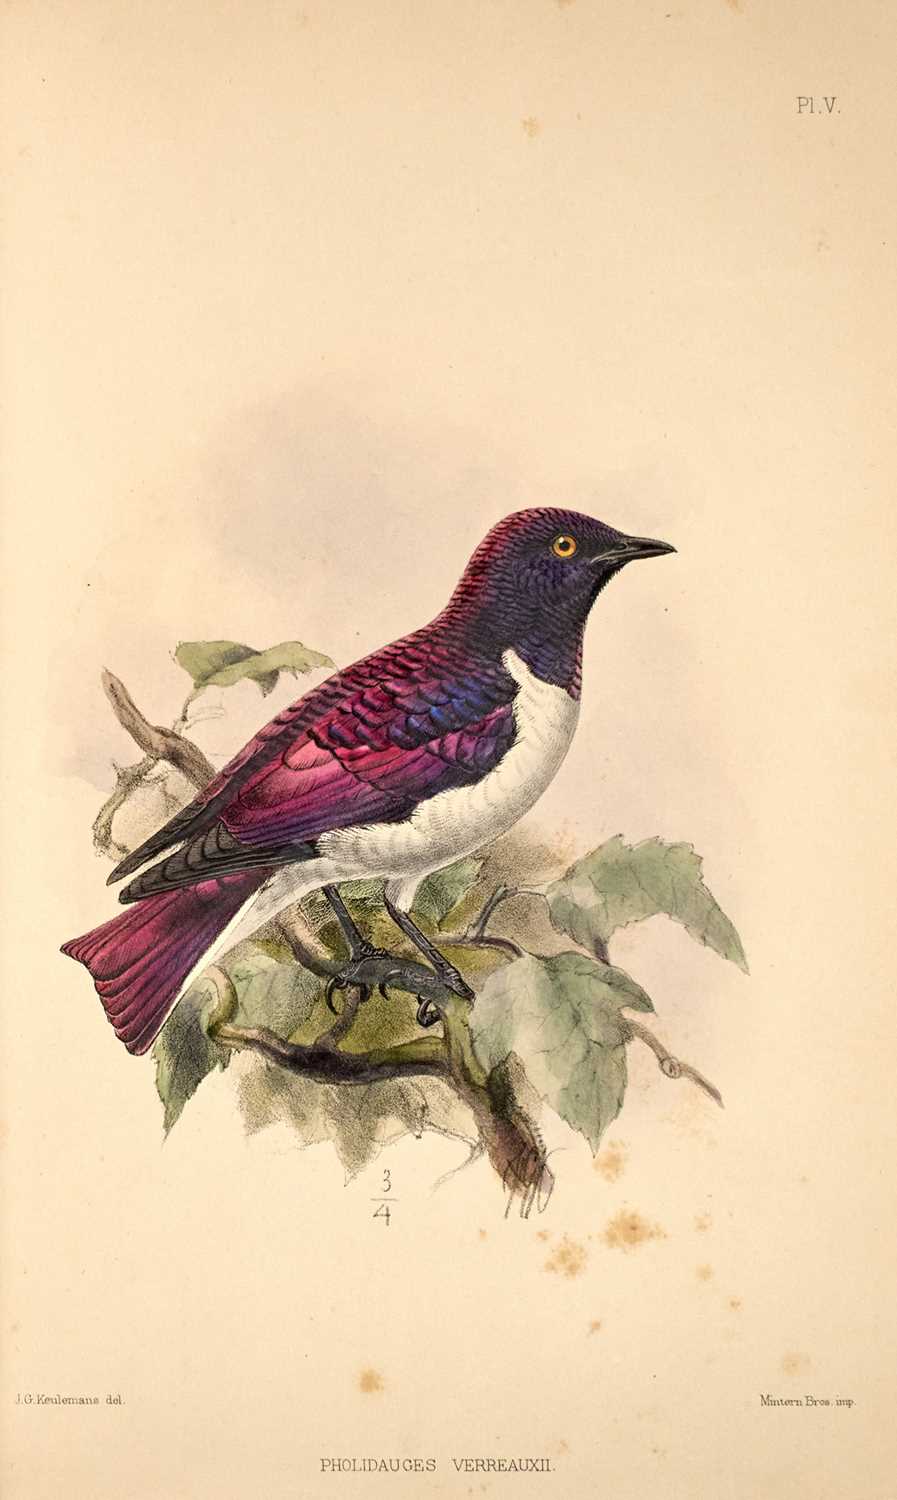 Lot 73 - J. V. Barboza du Bocage on the ornithology of Angola.